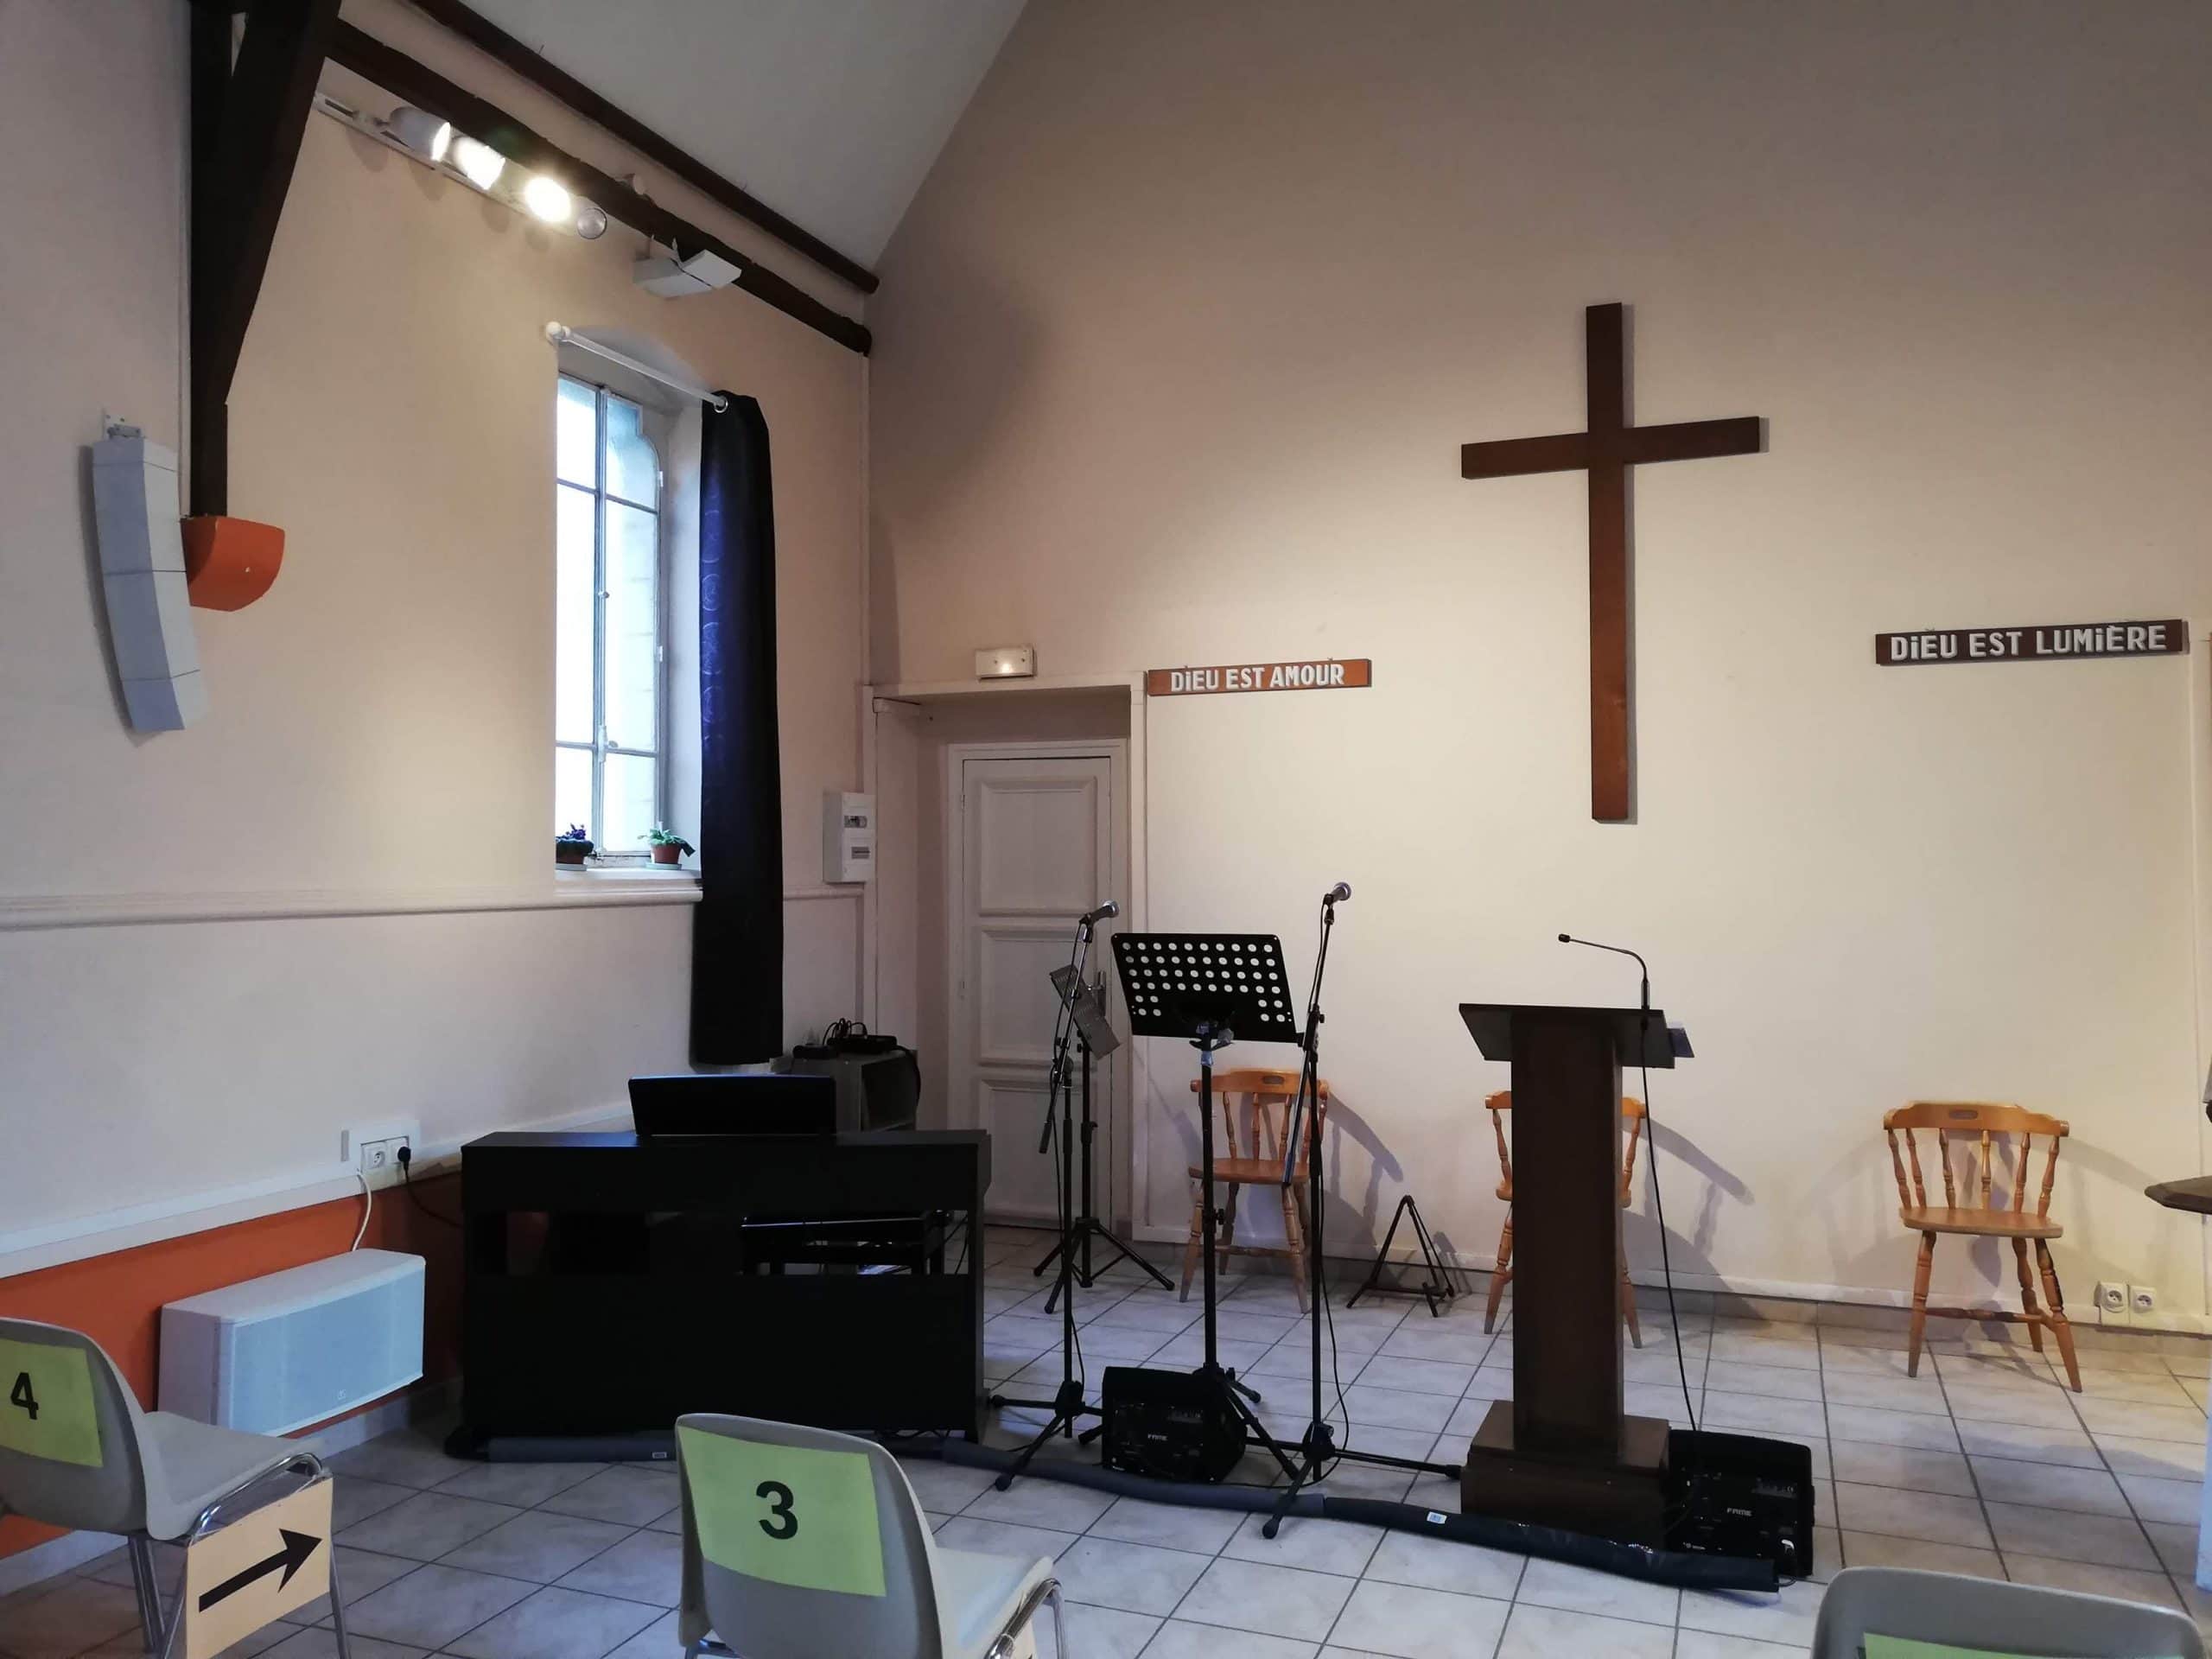 Une nouvelle sonorisation pour l’église protestante unie de Mantes-la-Jolie